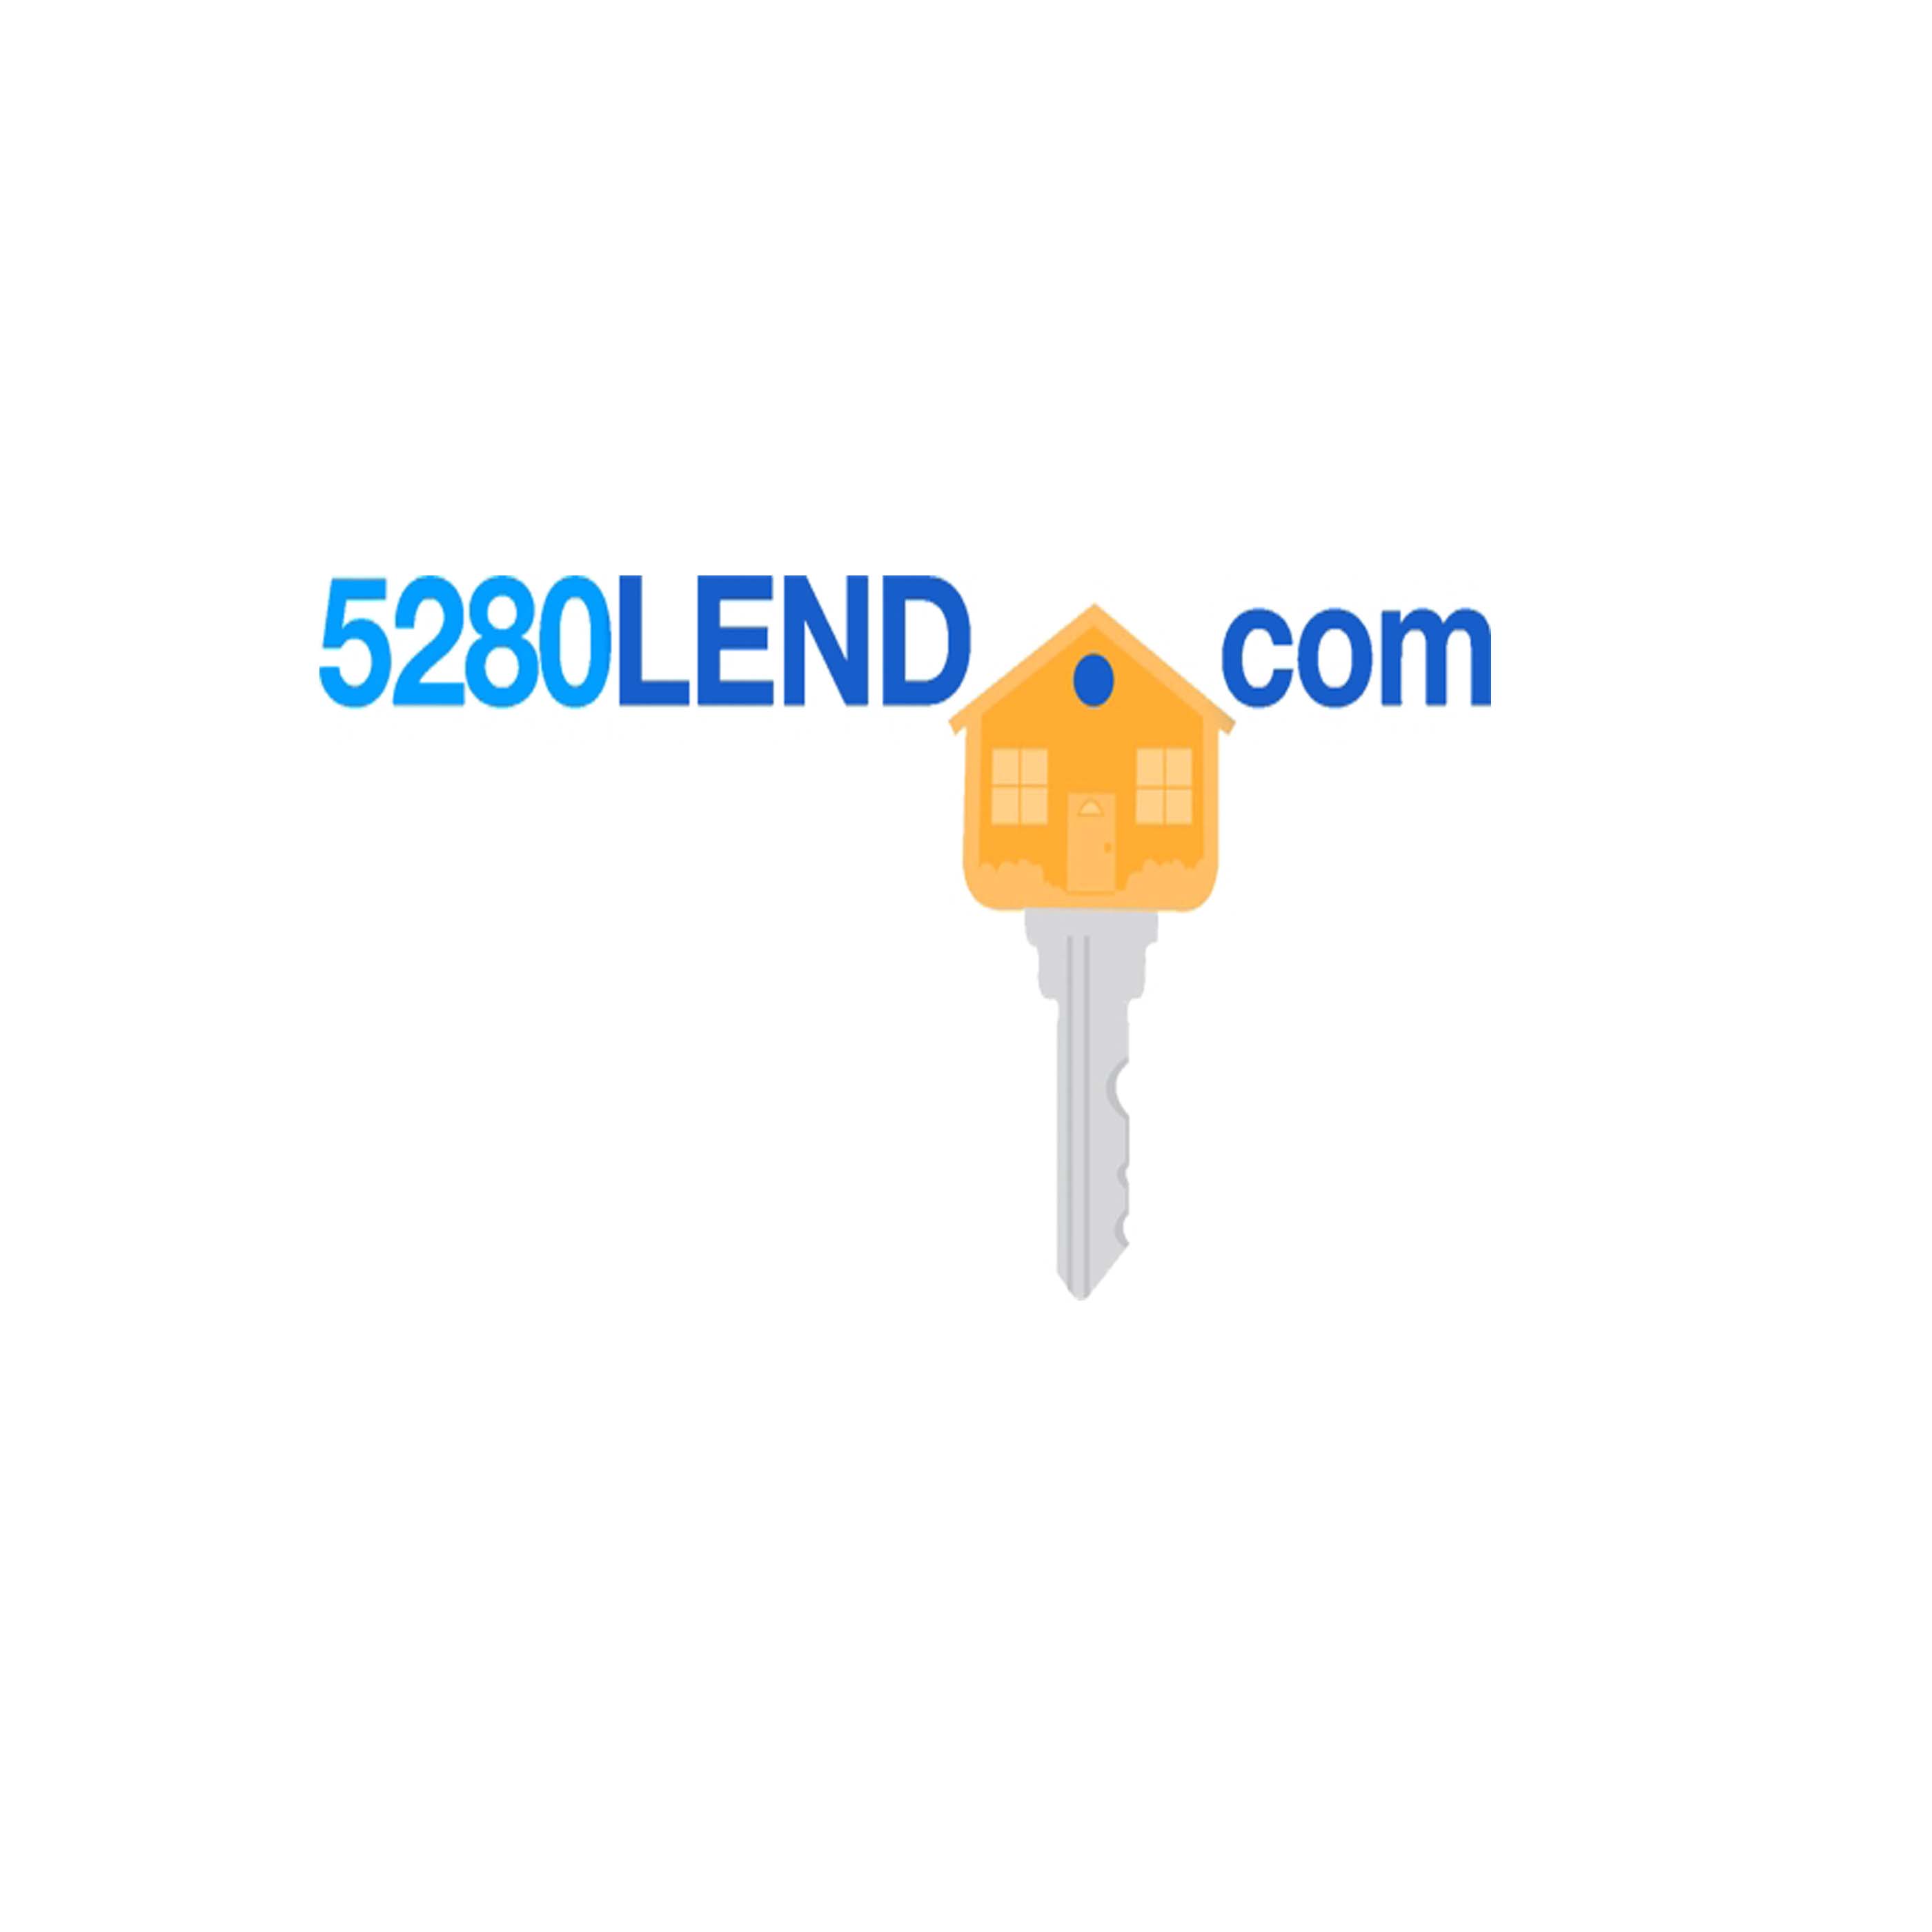 Business logo of 5280lend.com